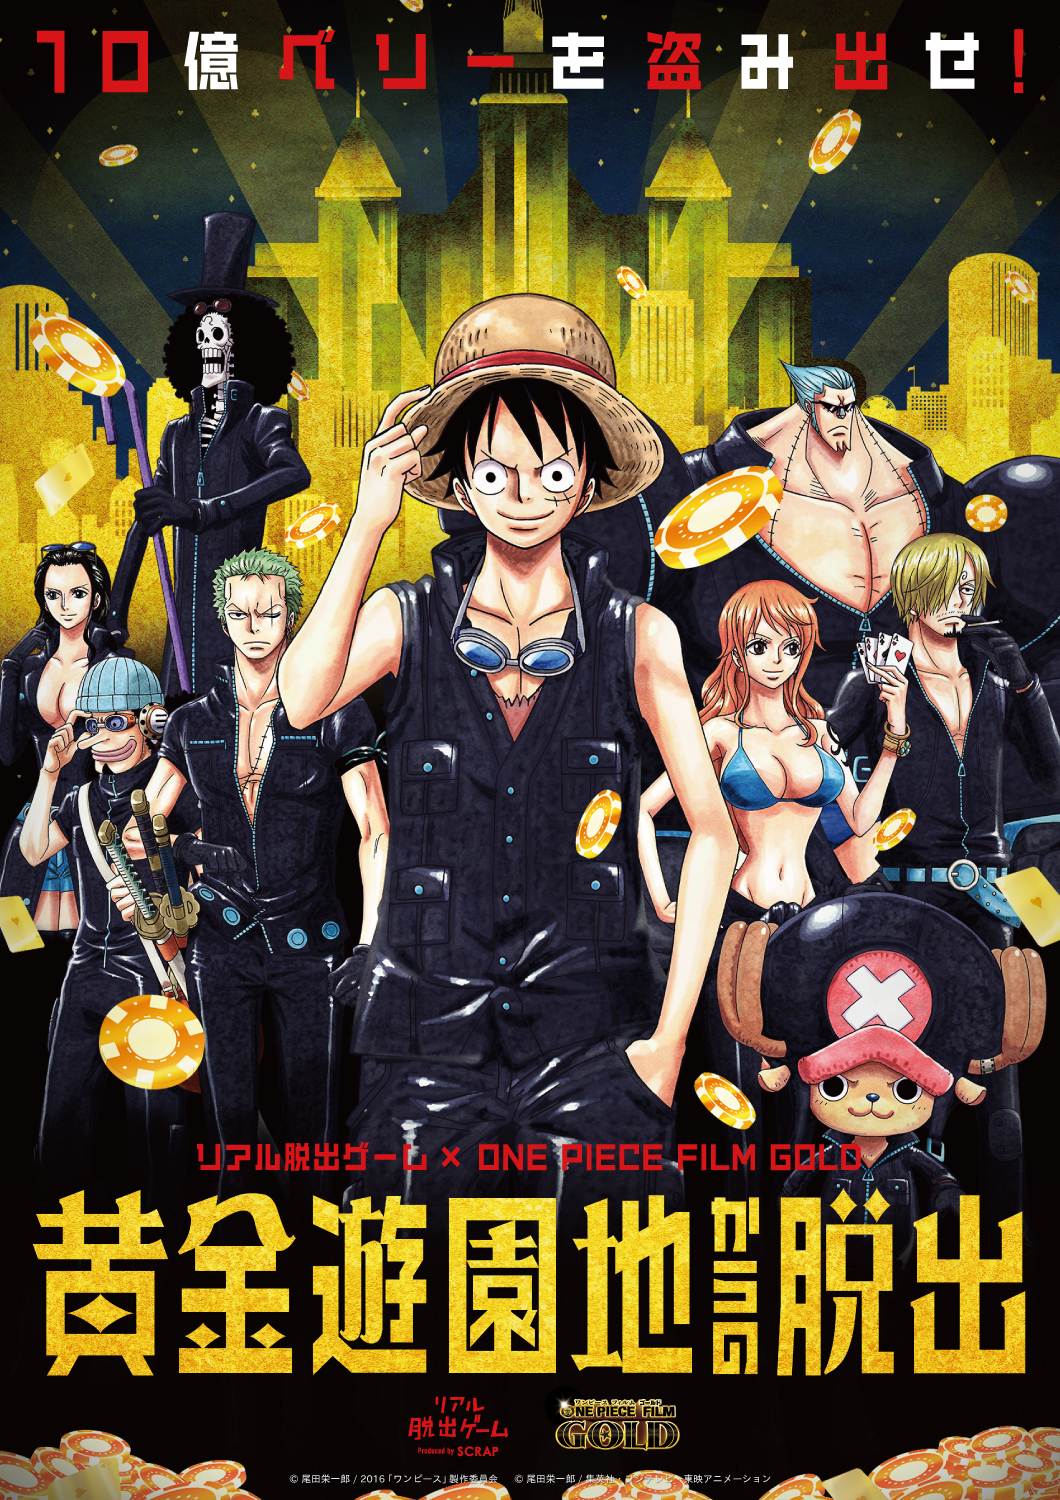 この夏 遊園地が黄金に染まる 映画 One Piece Film Gold とコラボしたリアル脱出ゲーム 黄金遊園地からの脱出 東京と大阪で開催決定 株式会社scrapのプレスリリース